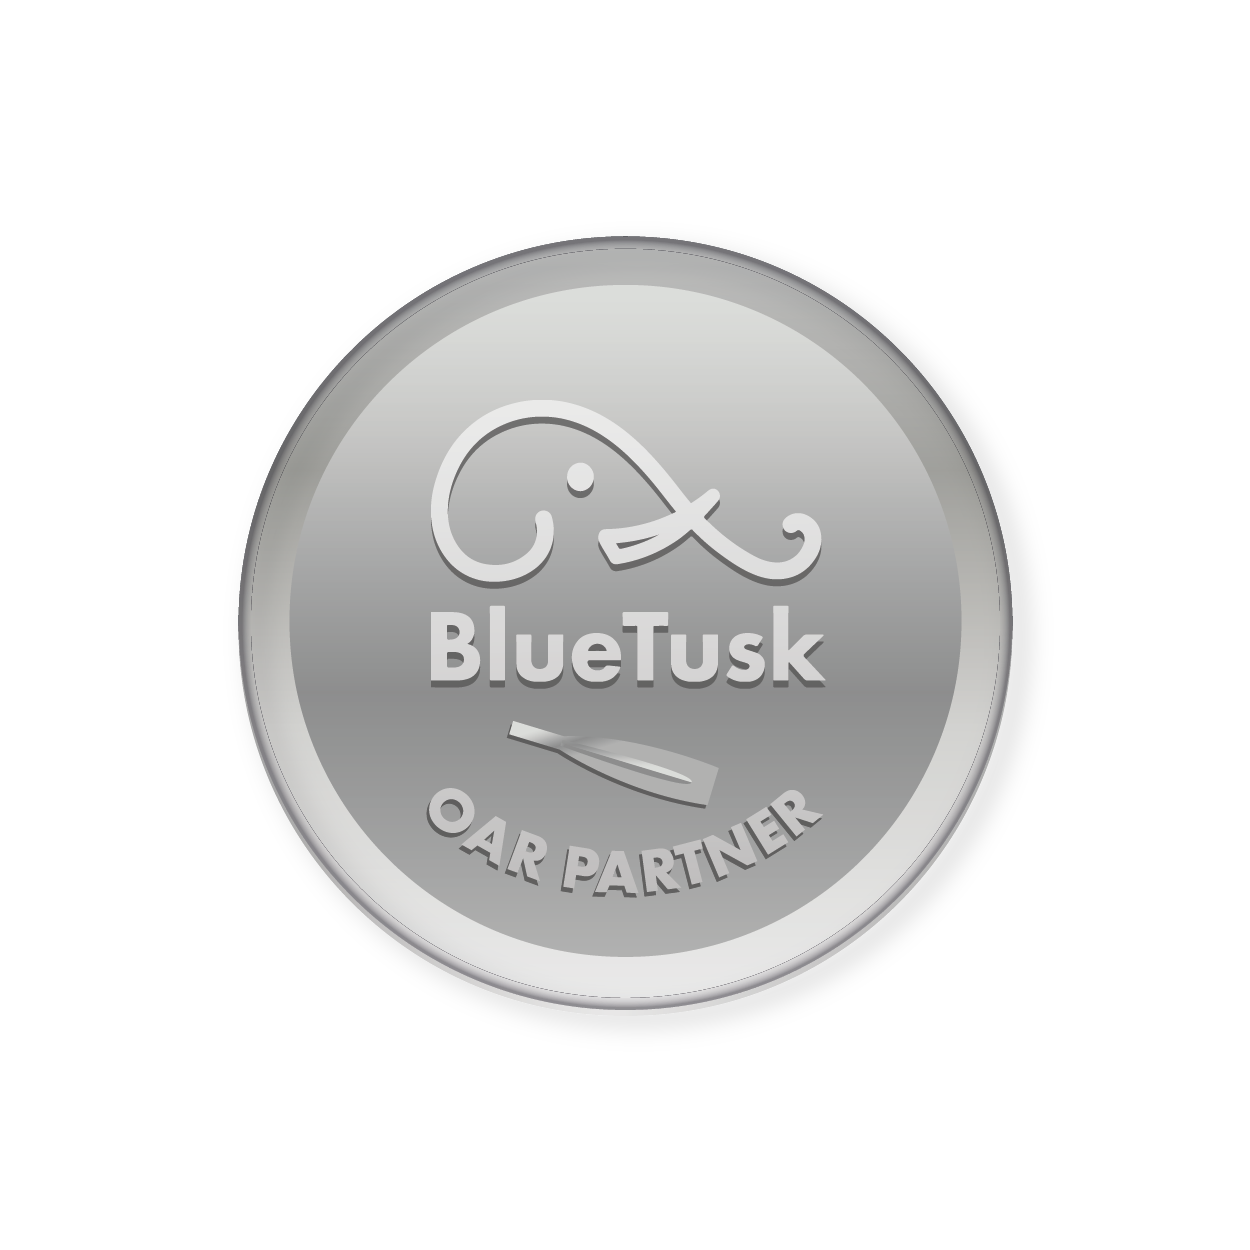 BlueTusk Oar Partner Package